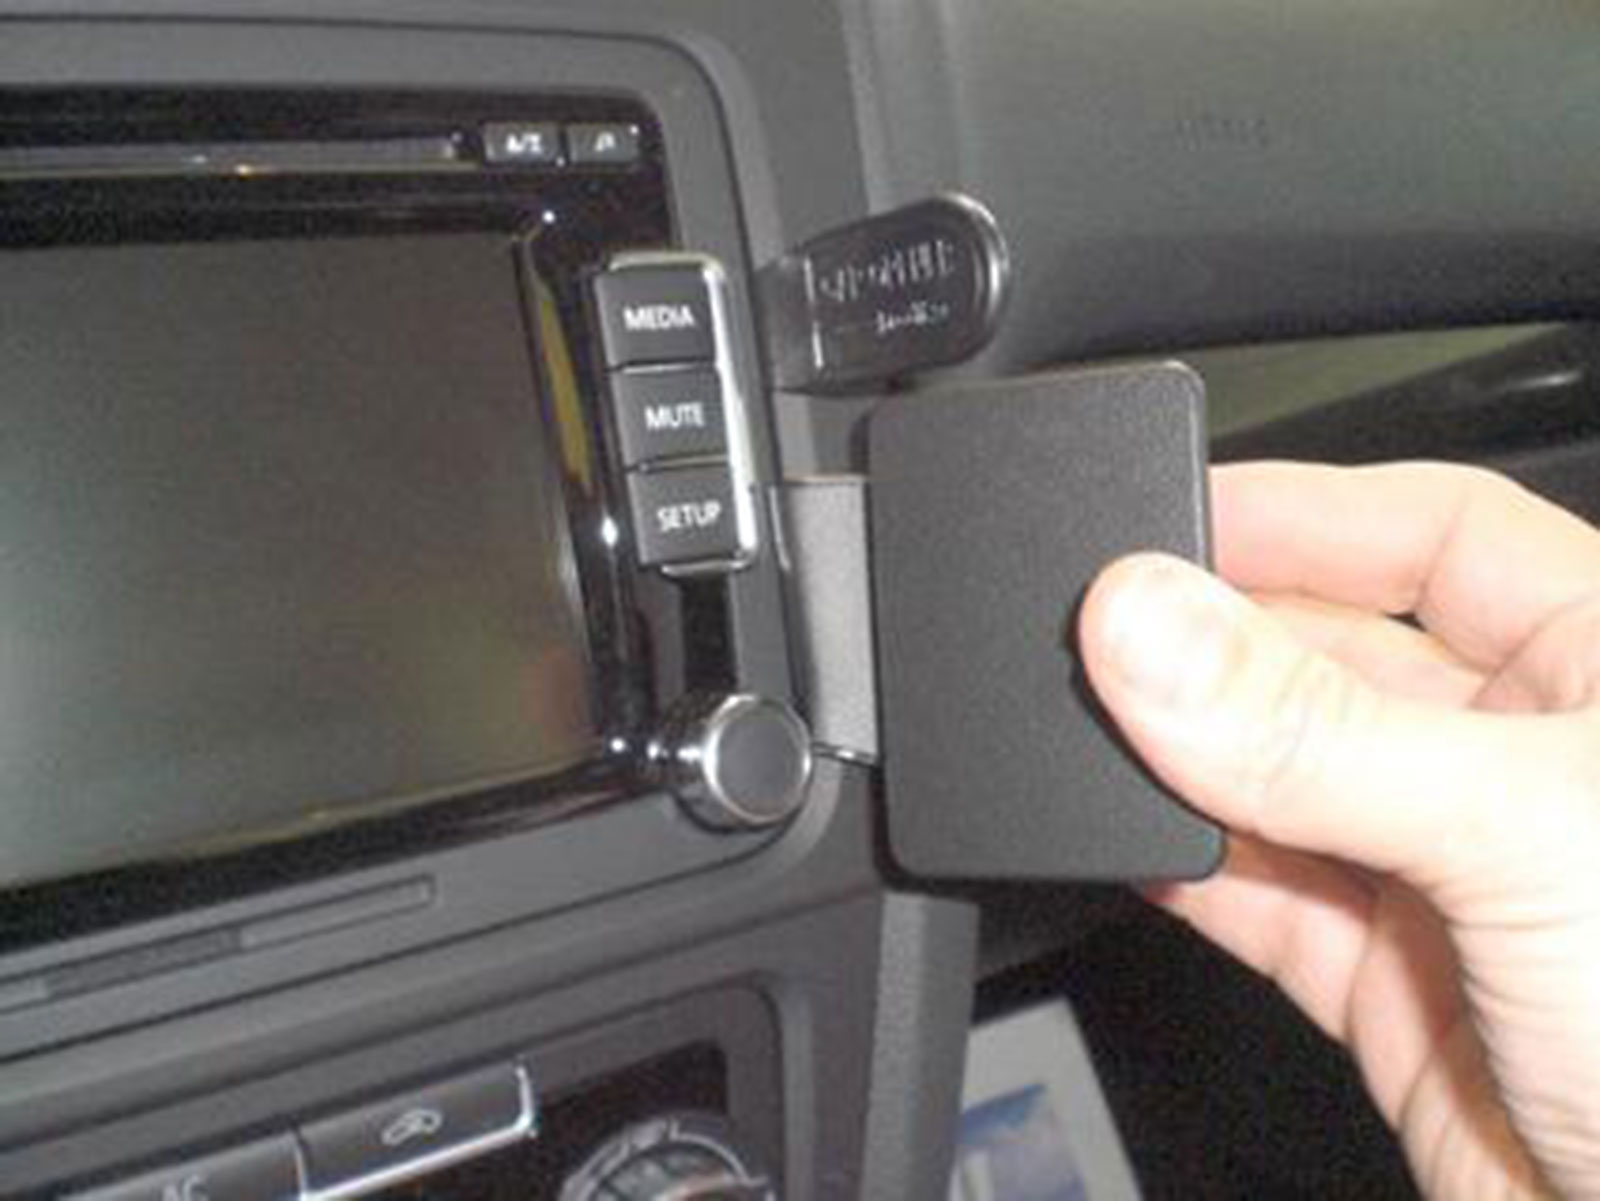 Autobildschirm Kabelloses Laden Handyhalterung Basis für Mercedes